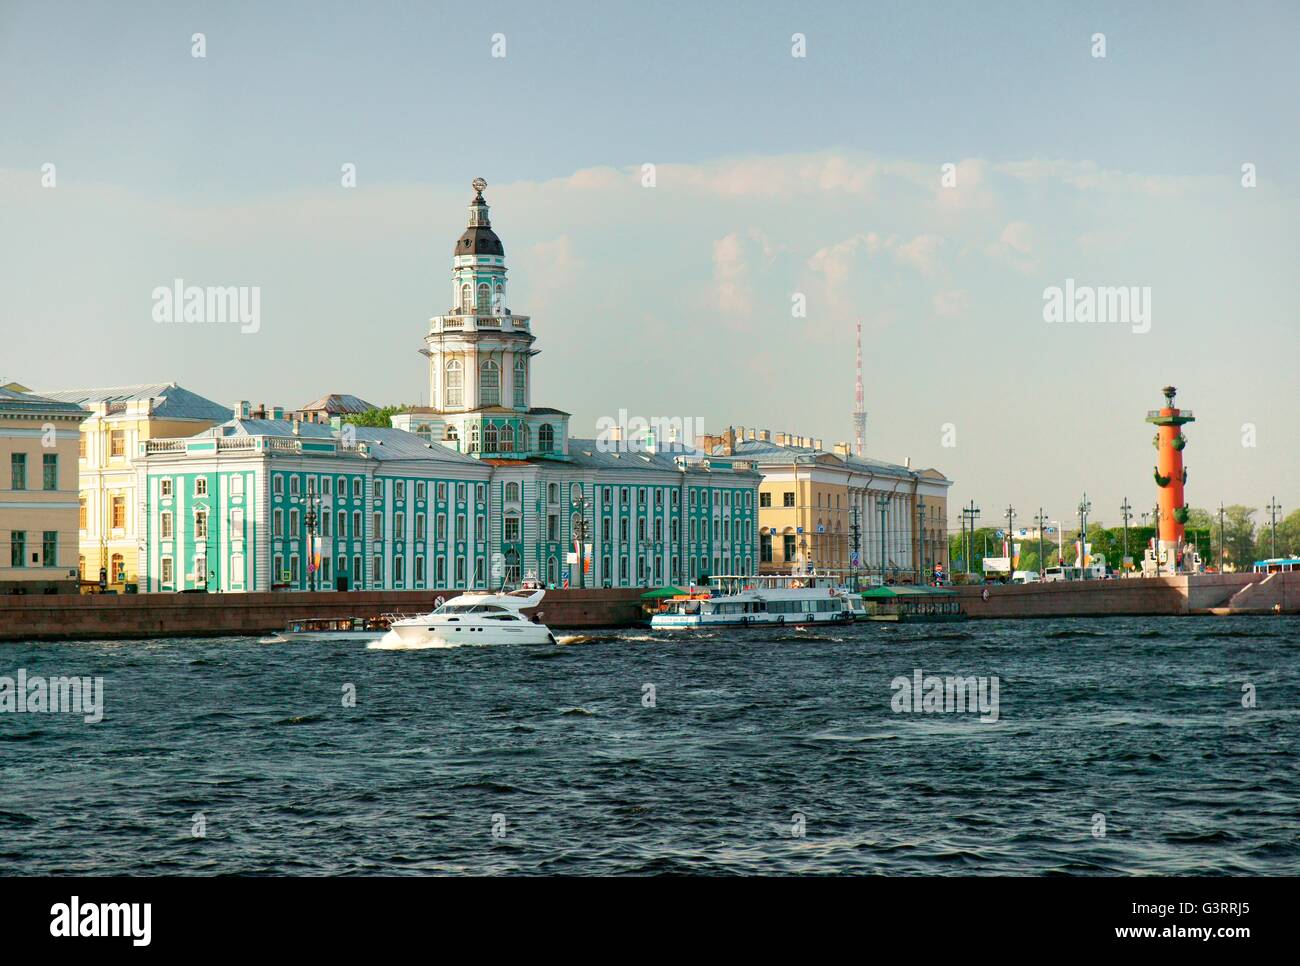 Saint Petersburg Russie. Le bâtiment bleu, zoologogical kunstkammer museum et la colonne rostrale. vasilevskiy île sur la Neva Banque D'Images